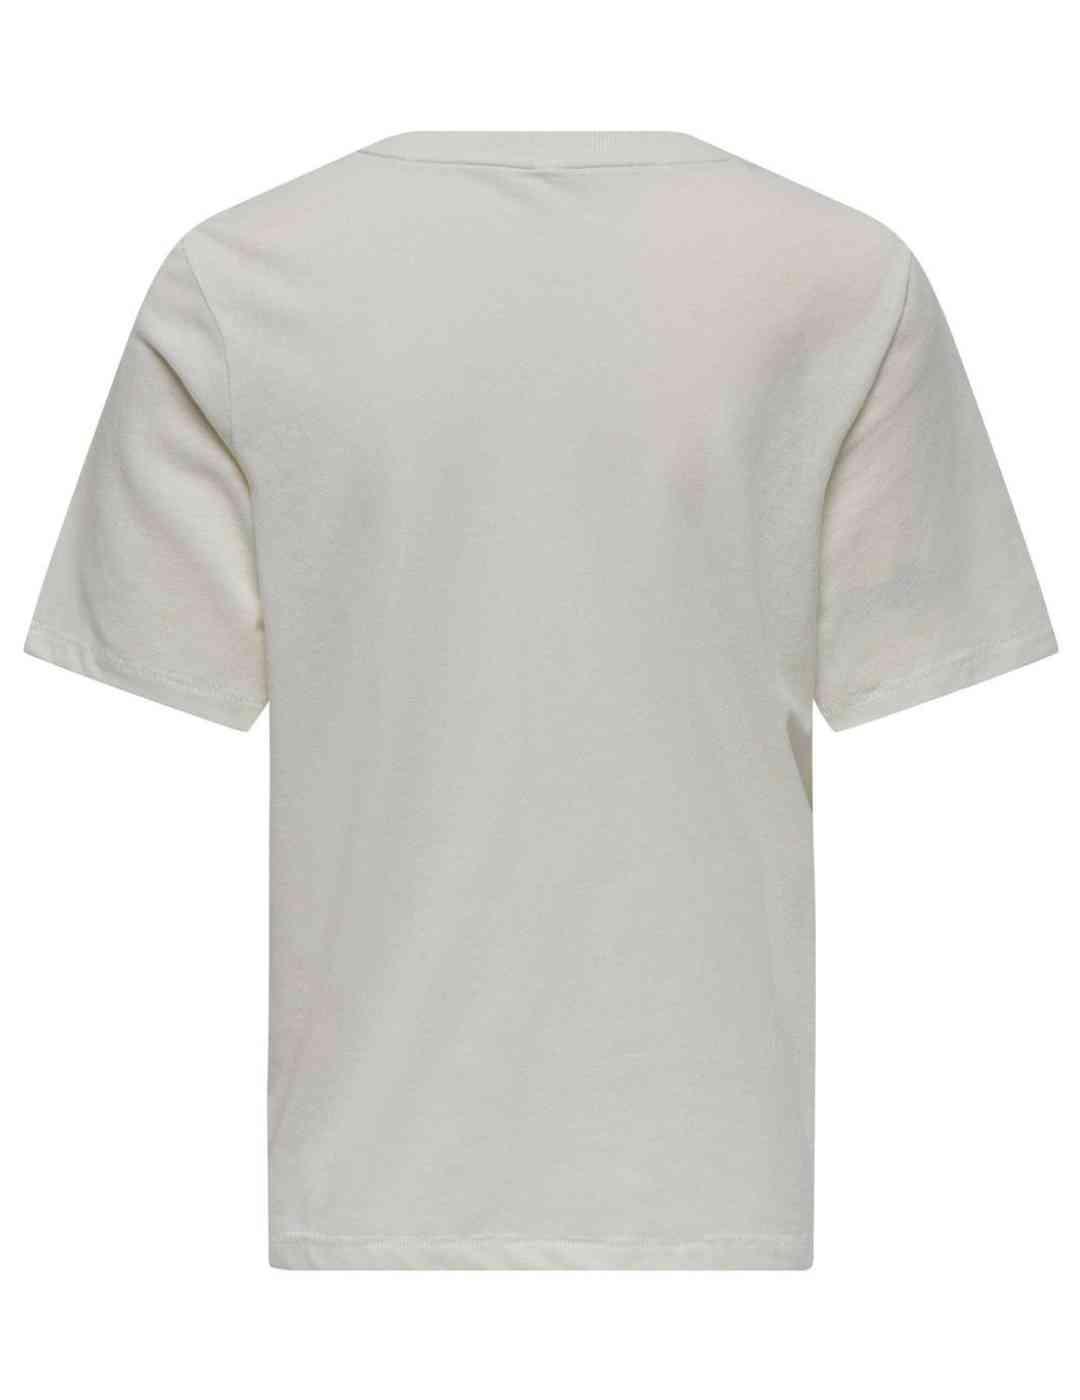 Camiseta Only Blinis blanco manga corta para mujer